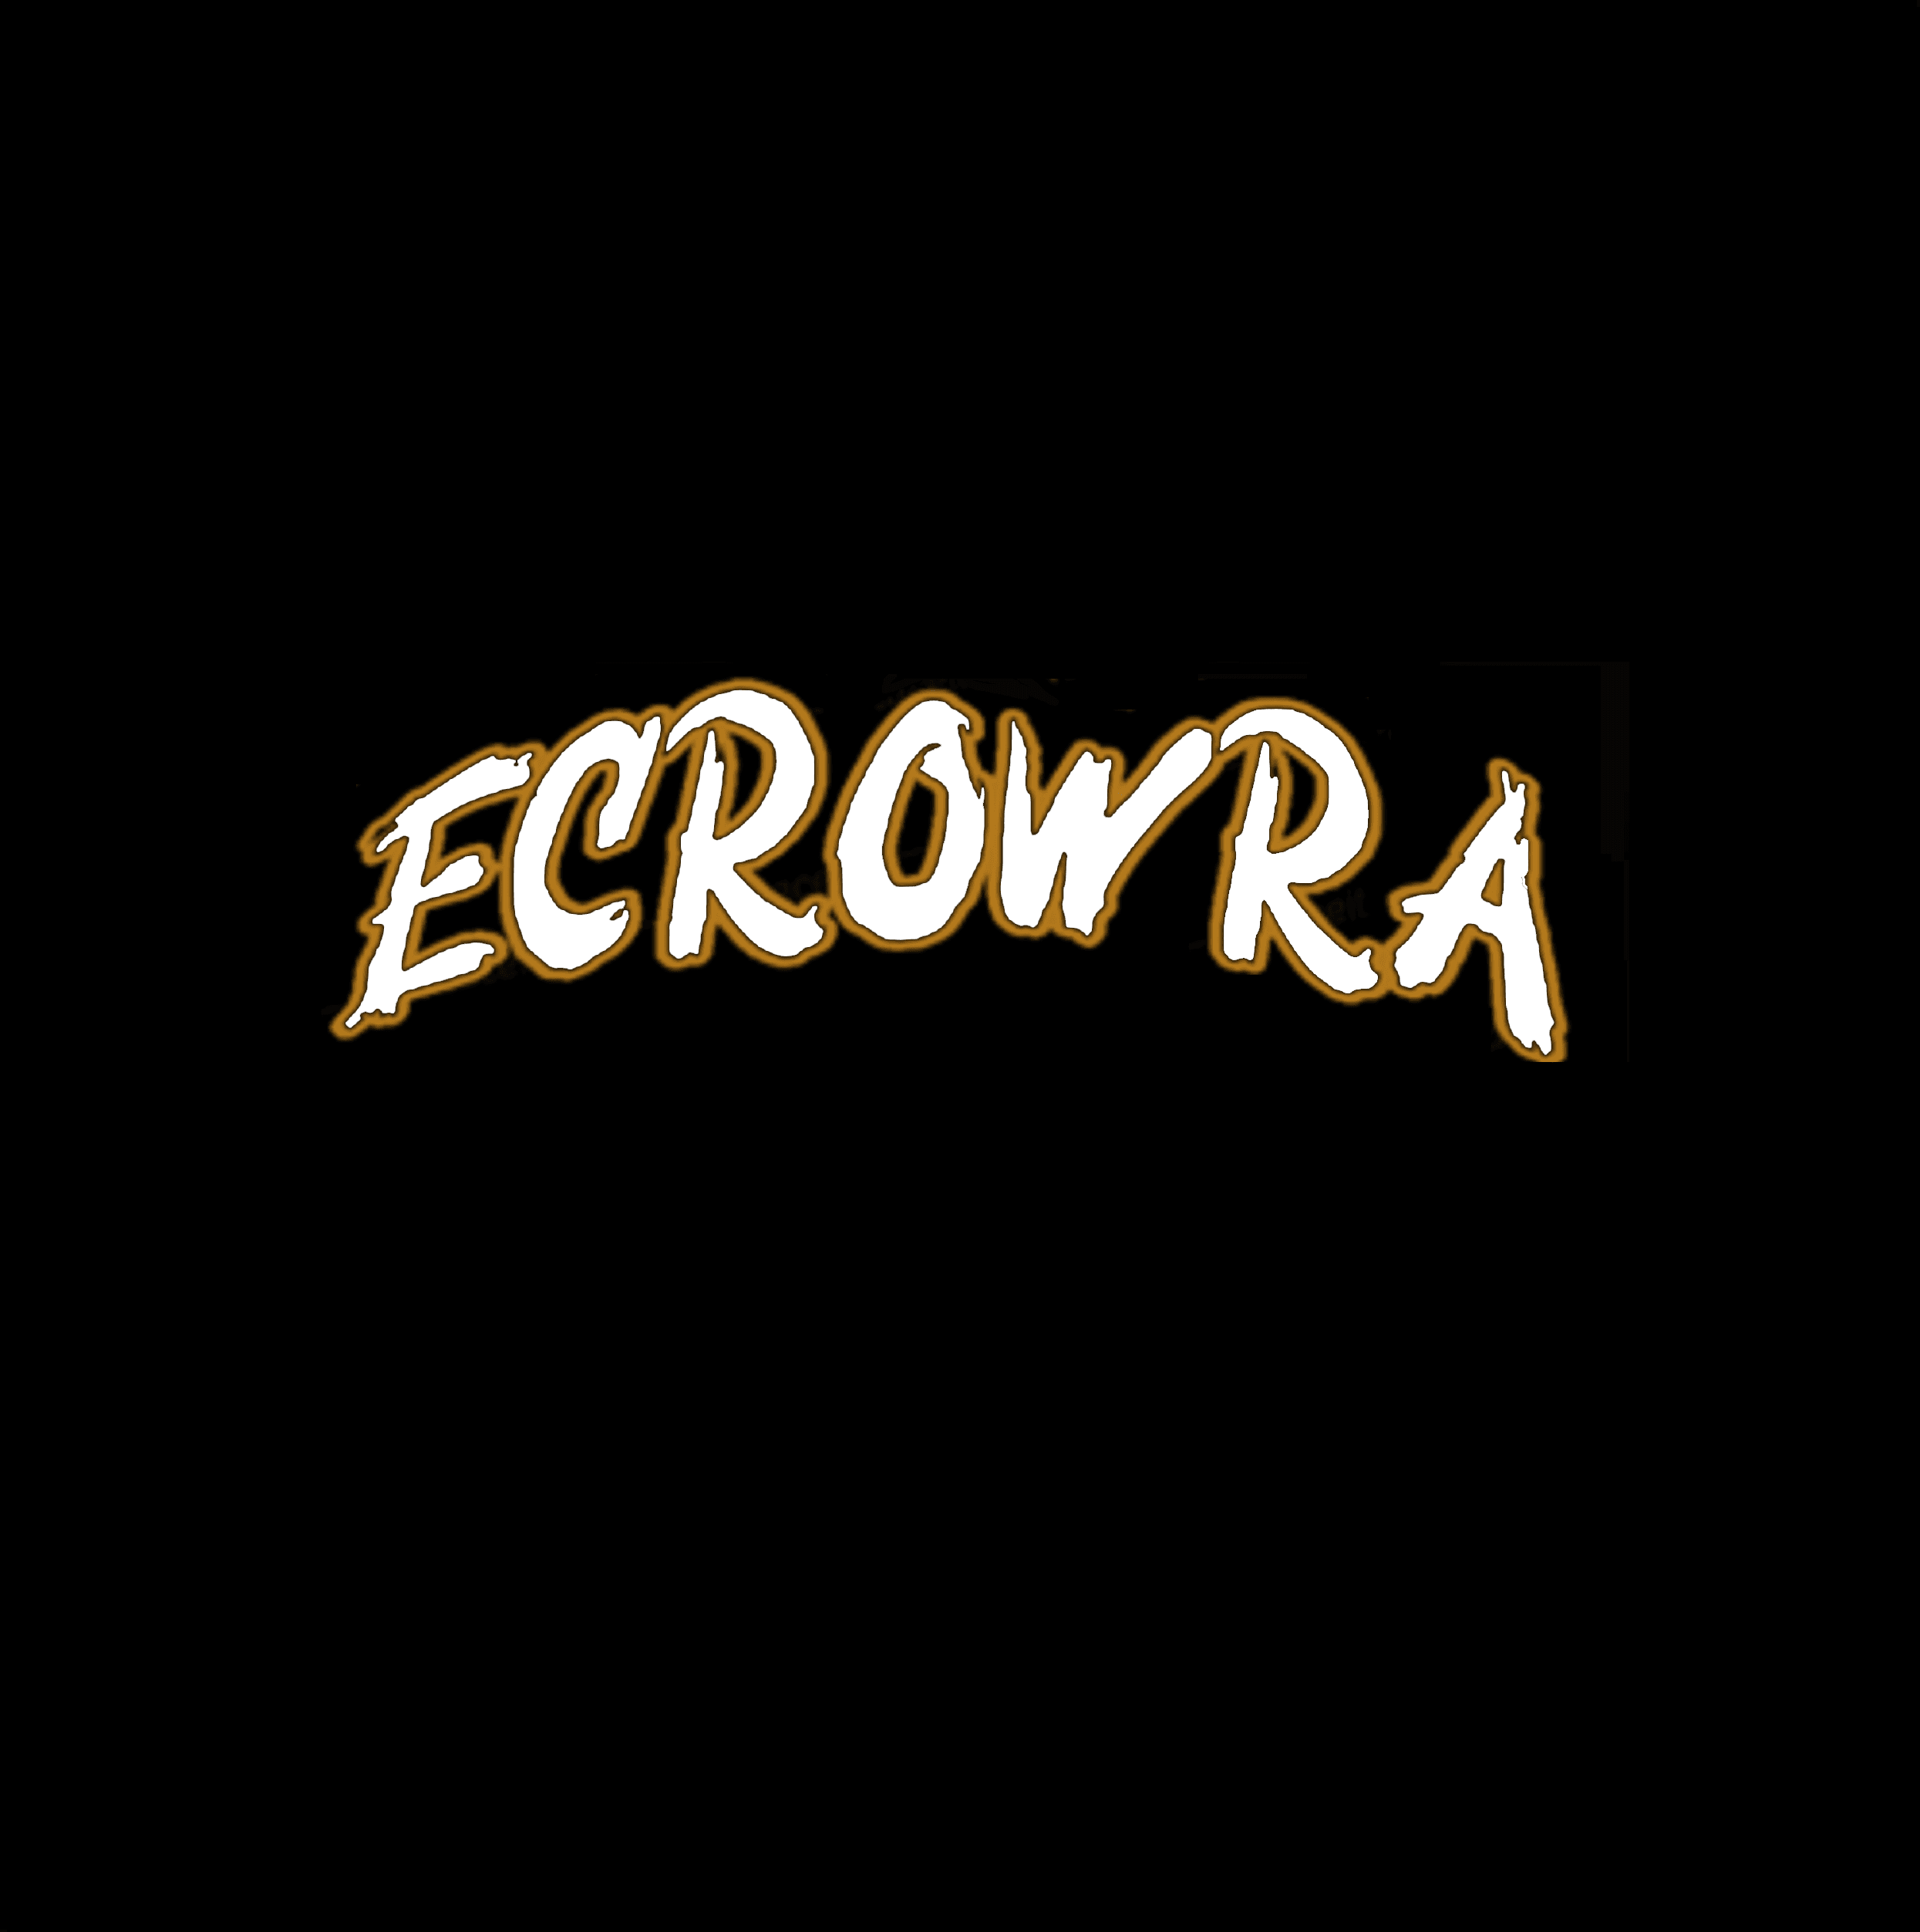 ecrowra